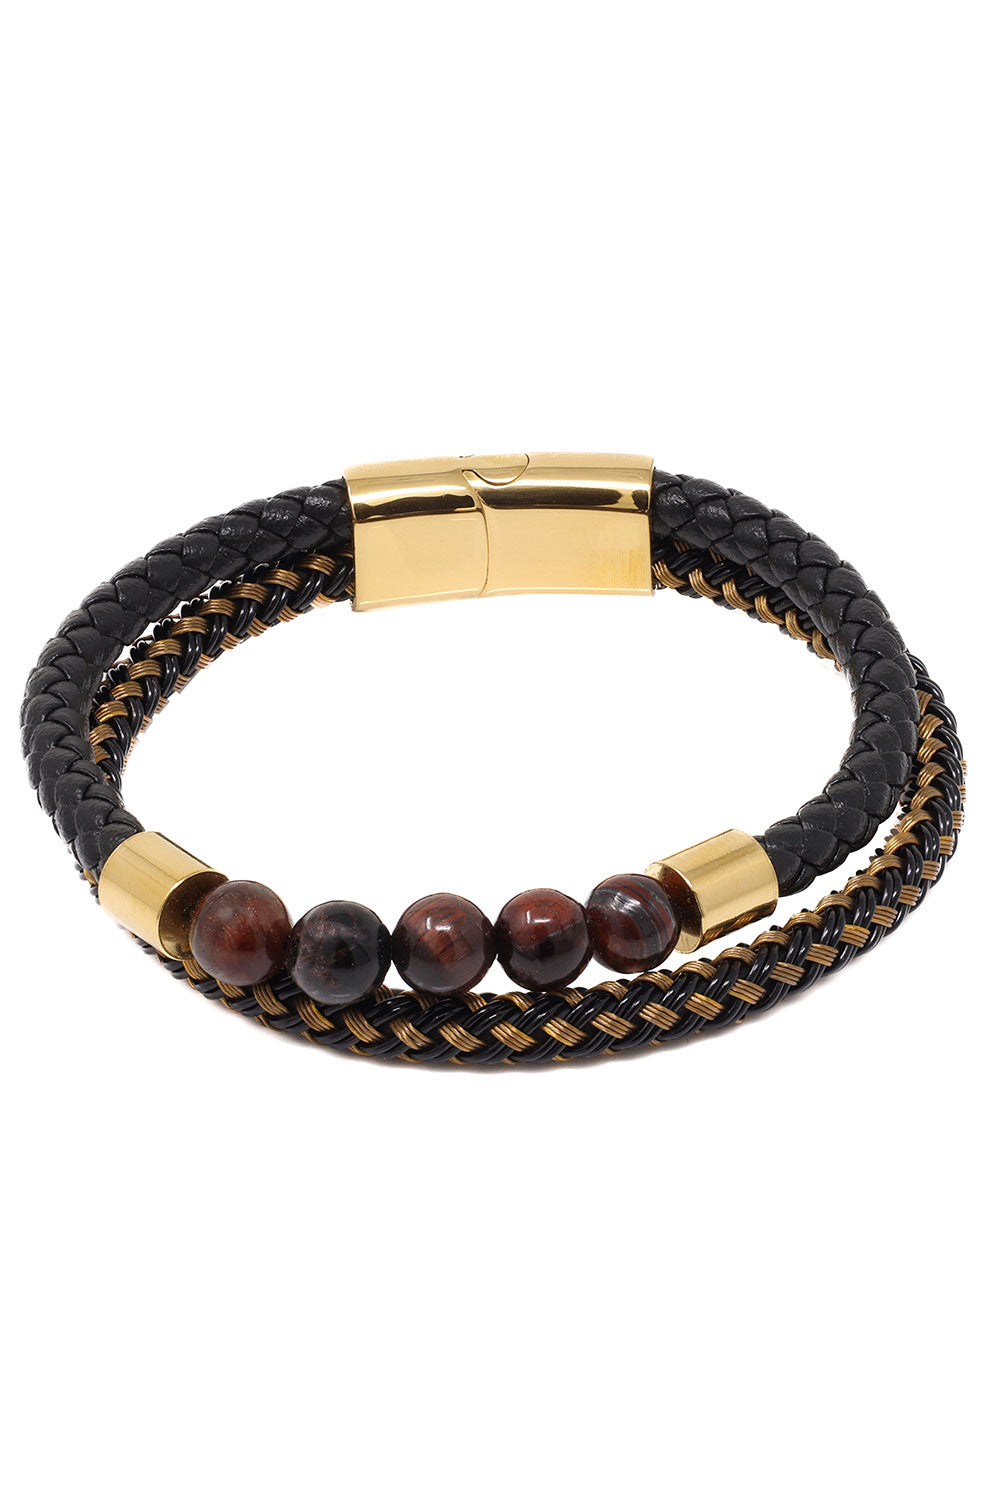 Barabas Unisex Obsidian Stone Braided Leather Bangle Bracelets 4BMS04 Black Gold